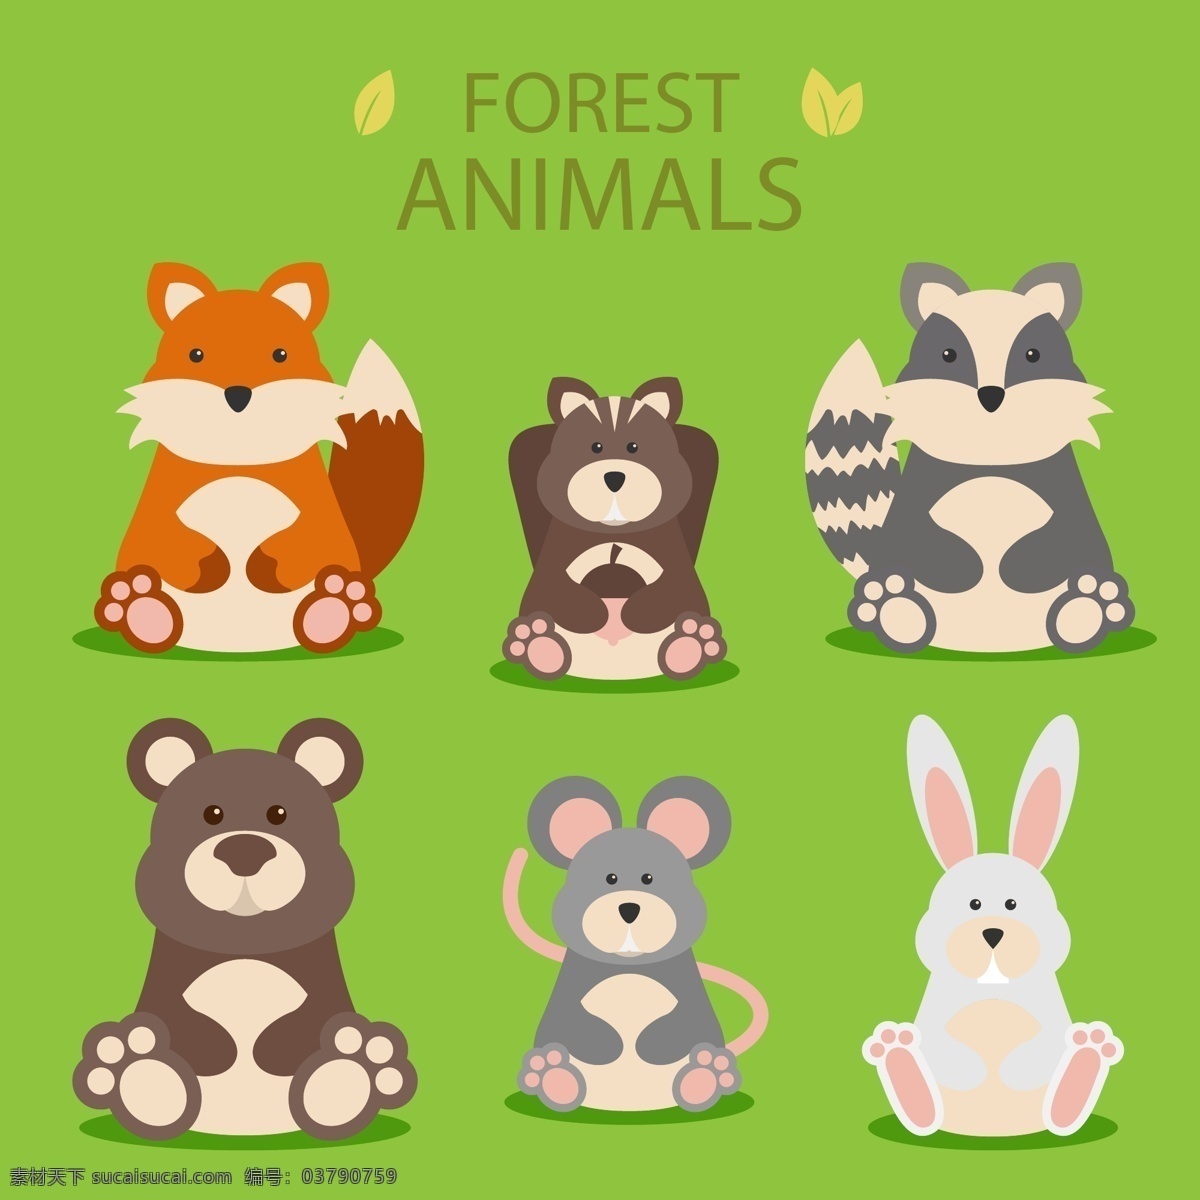 款 可爱 坐姿 森林 动物 矢量 浣熊 熊 兔子 松鼠 老鼠 狐狸 生物世界 野生动物